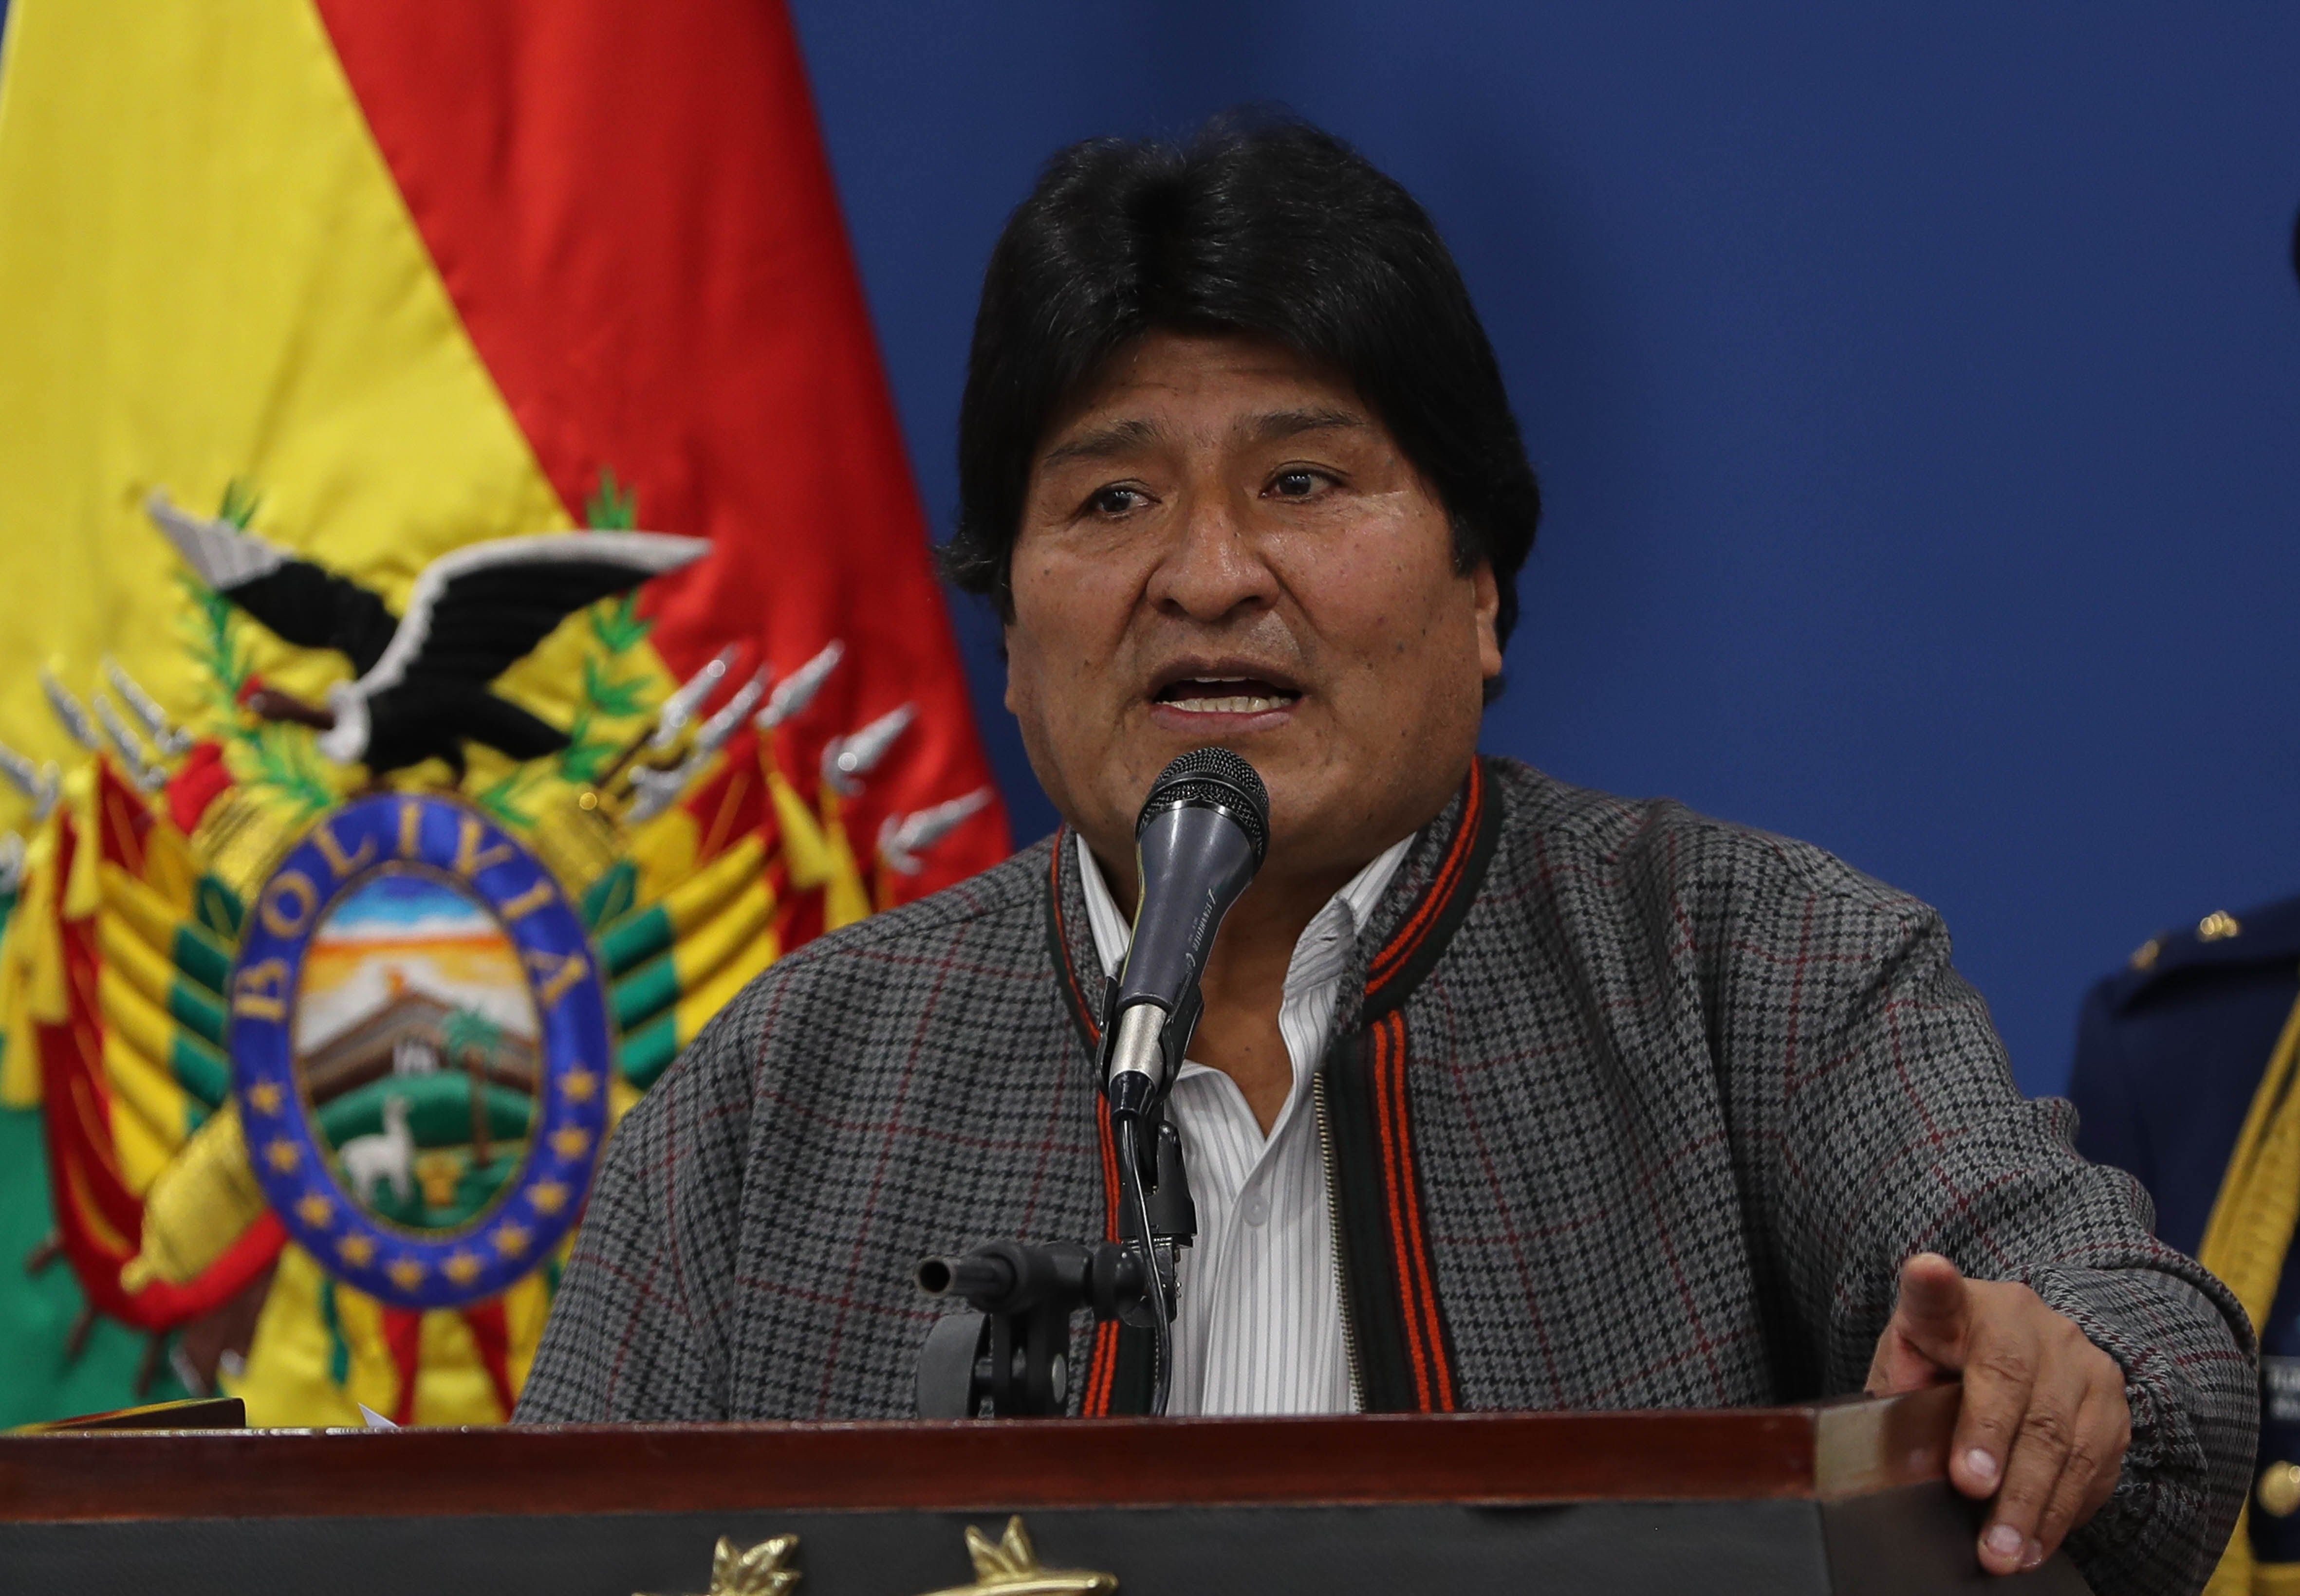 El órgano electoral de Bolivia investiga una posible falta de Evo Morales